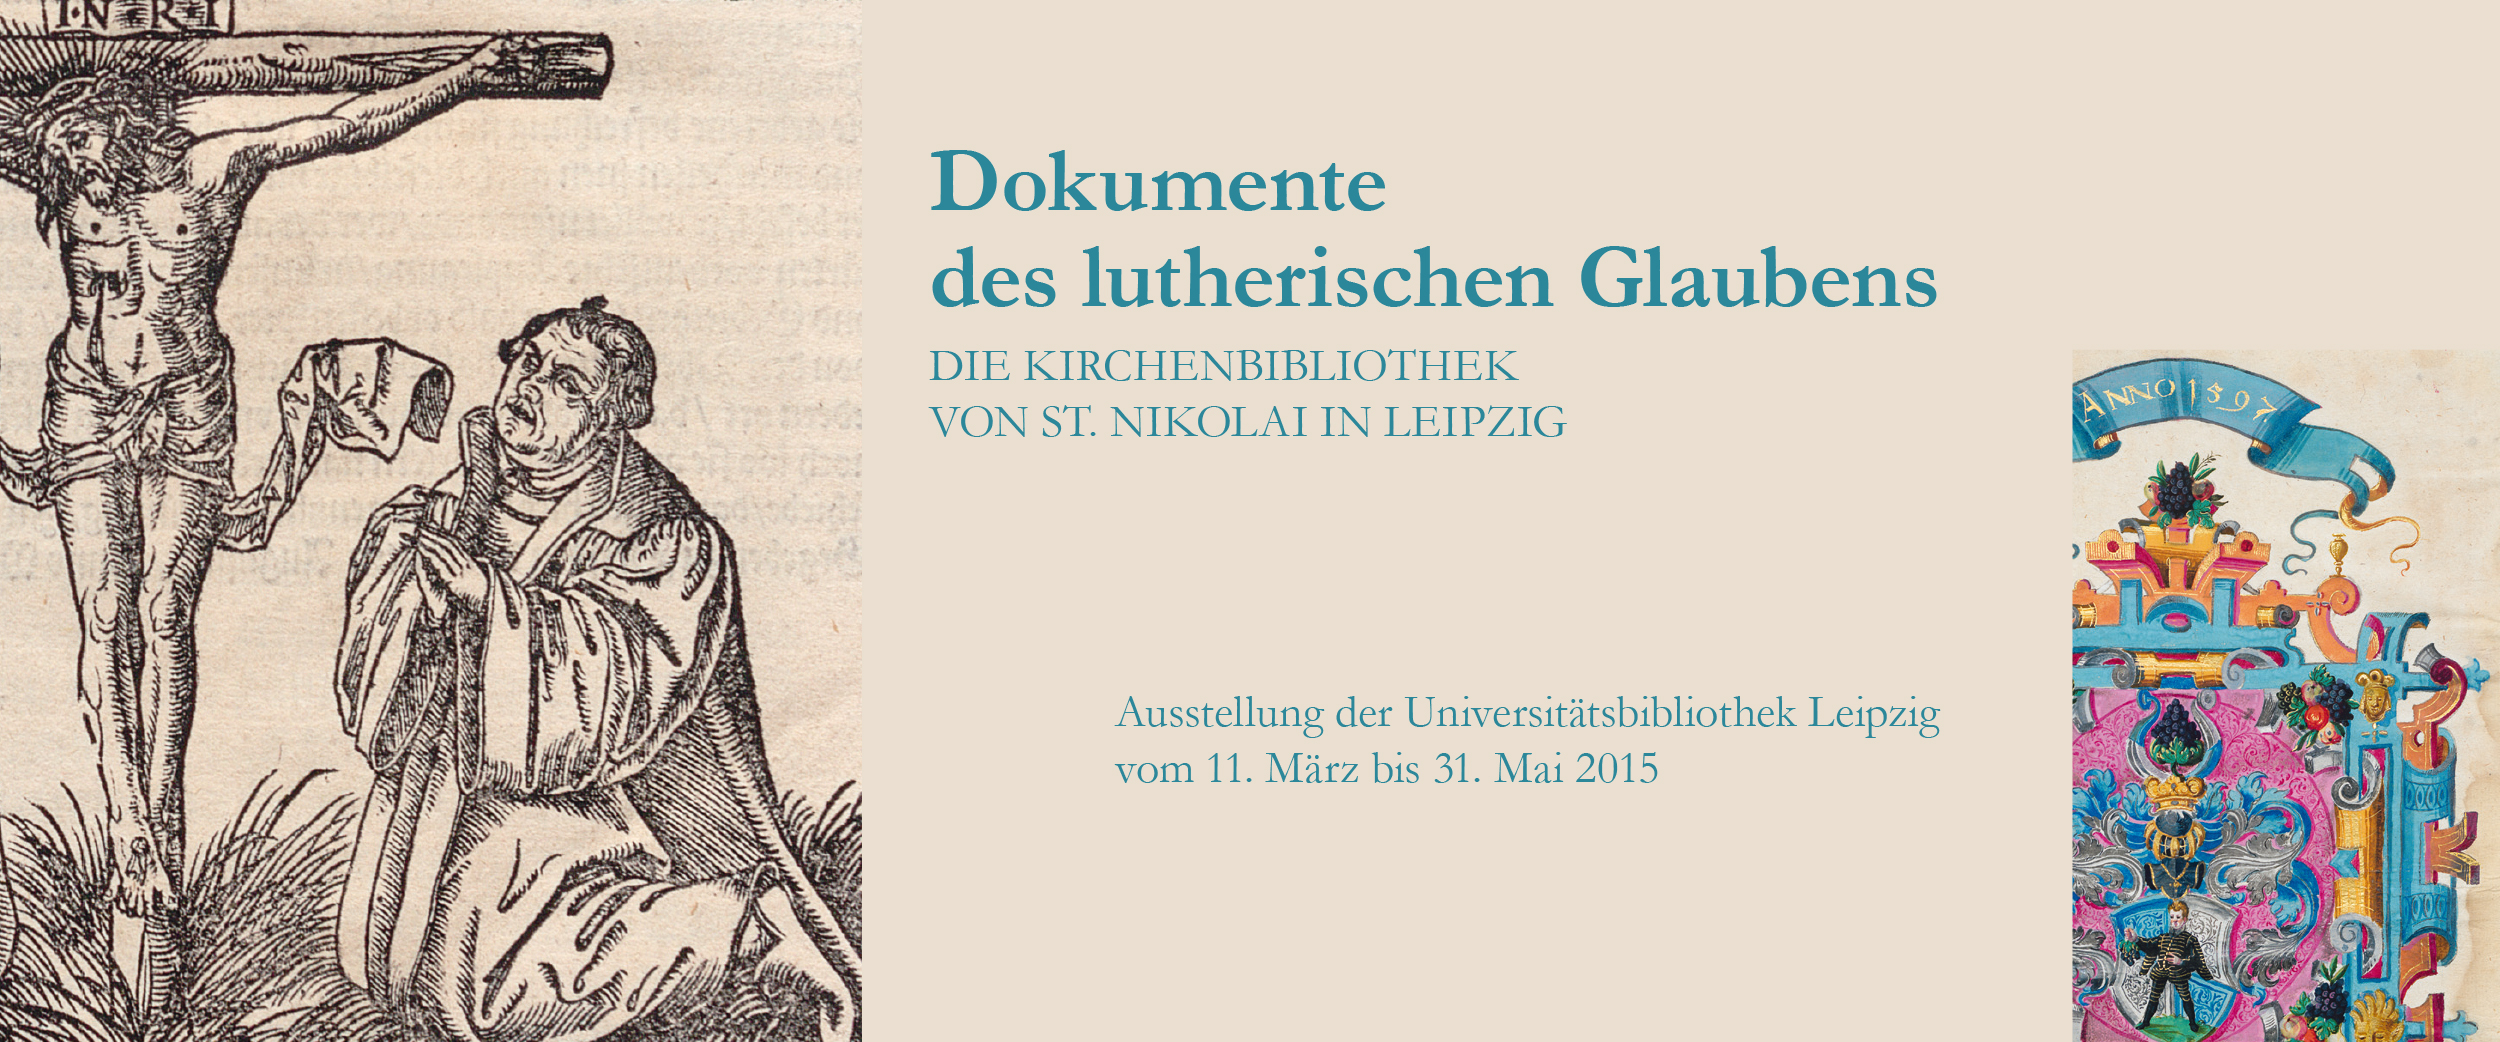 Dokumente des lutherischen Glaubens. Die Kirchenbibliothek von St. Nikolai in Leipzig -- eine Ausstellung der Universitätsbibliothek Leipzig